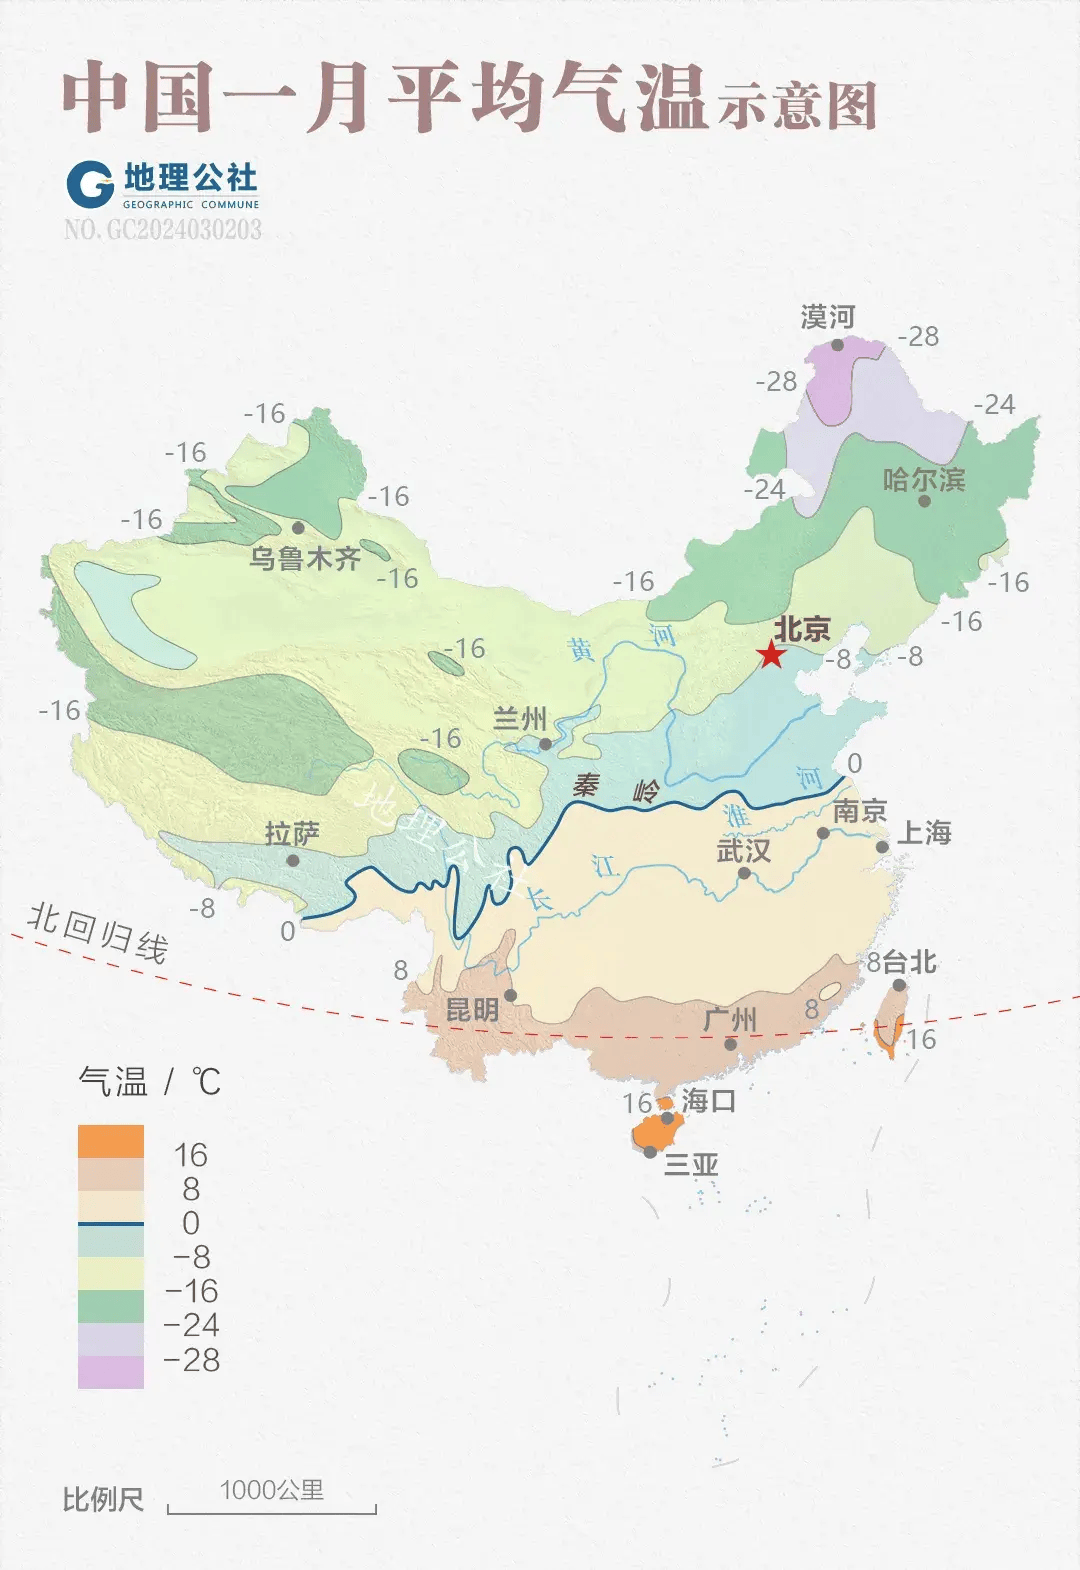 中国长途自驾的地理逻辑